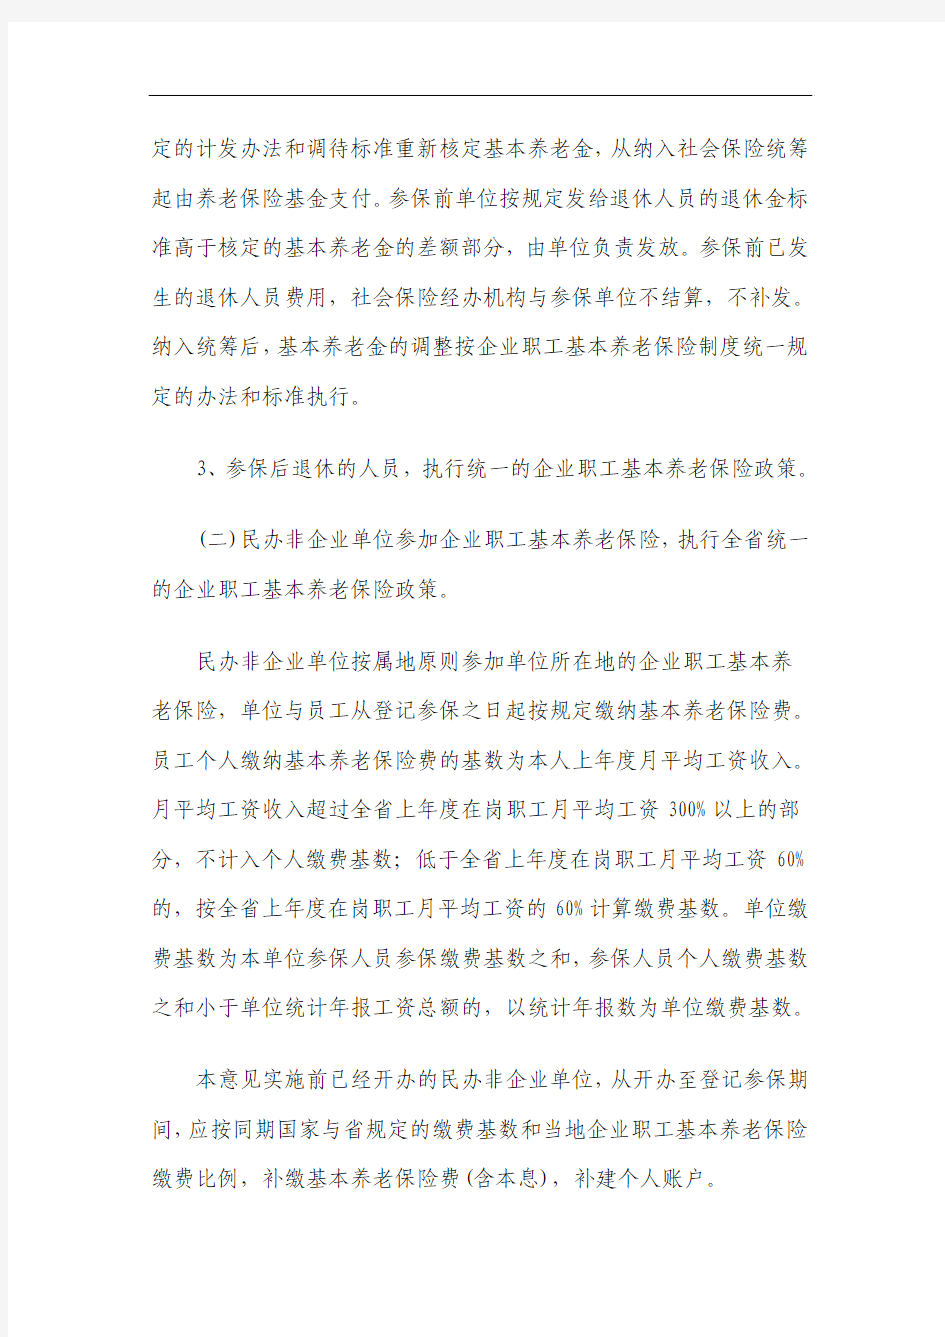 湖南省关于完善企业职工基本养老保险制度若干政策问题的意见